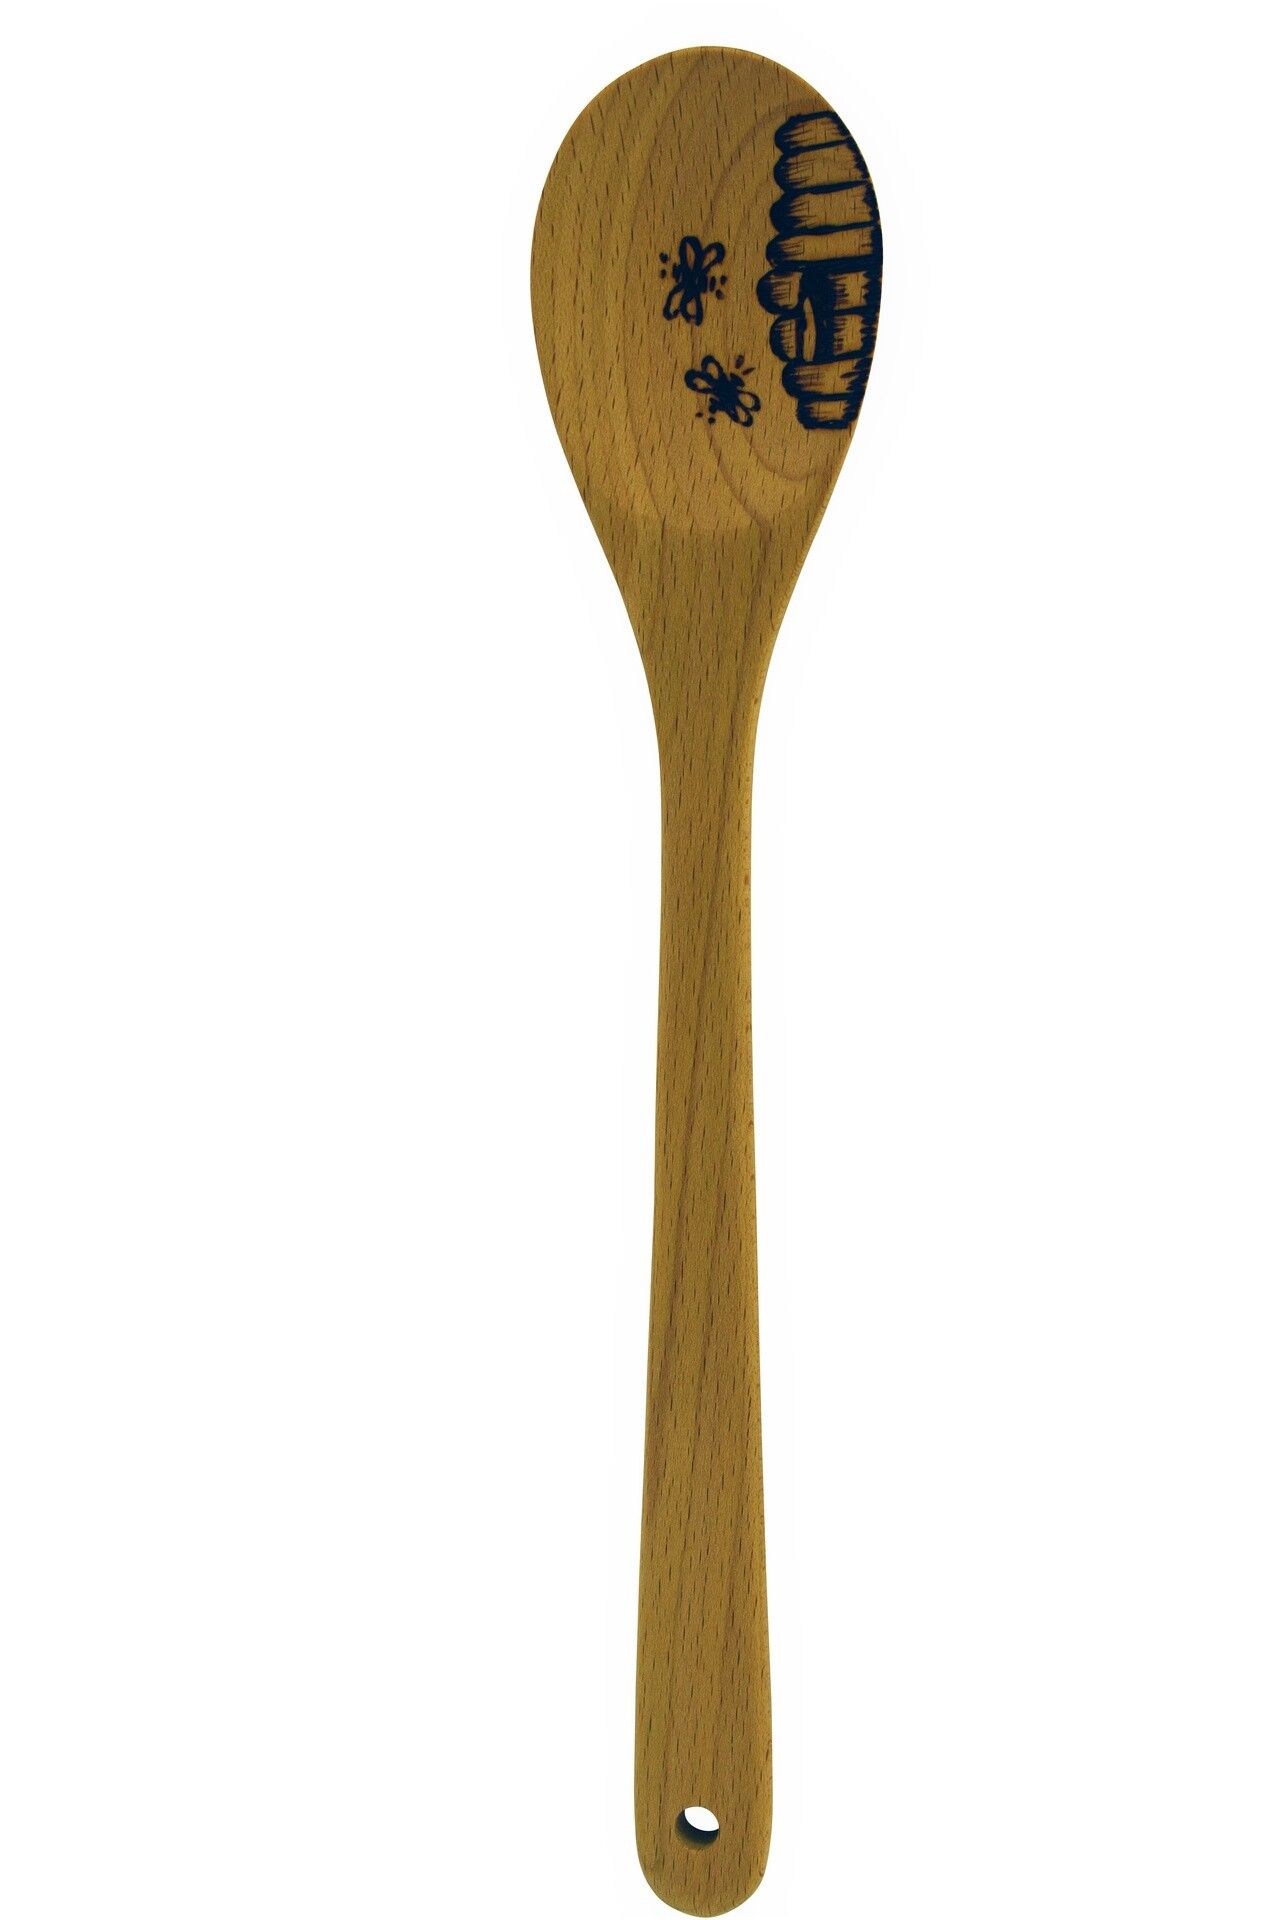 Wooden Spoon - Bee Design